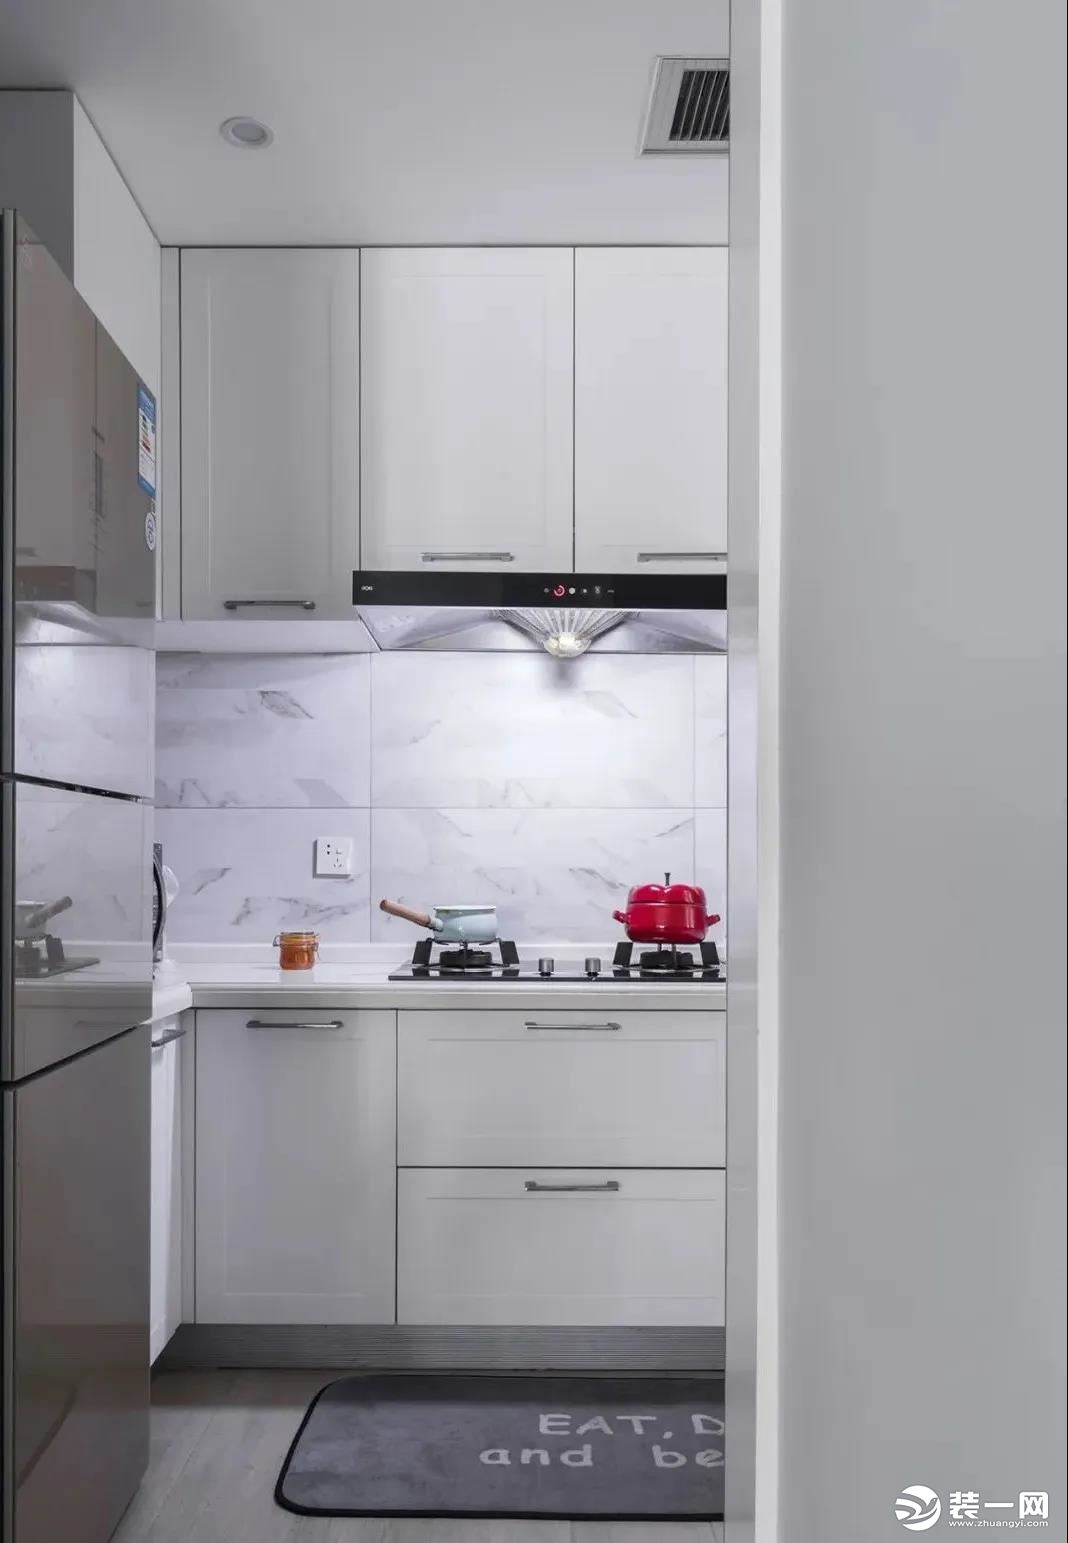 5厨房空间较小，所以采用白色墙砖与橱柜，有扩大空间的视觉效果